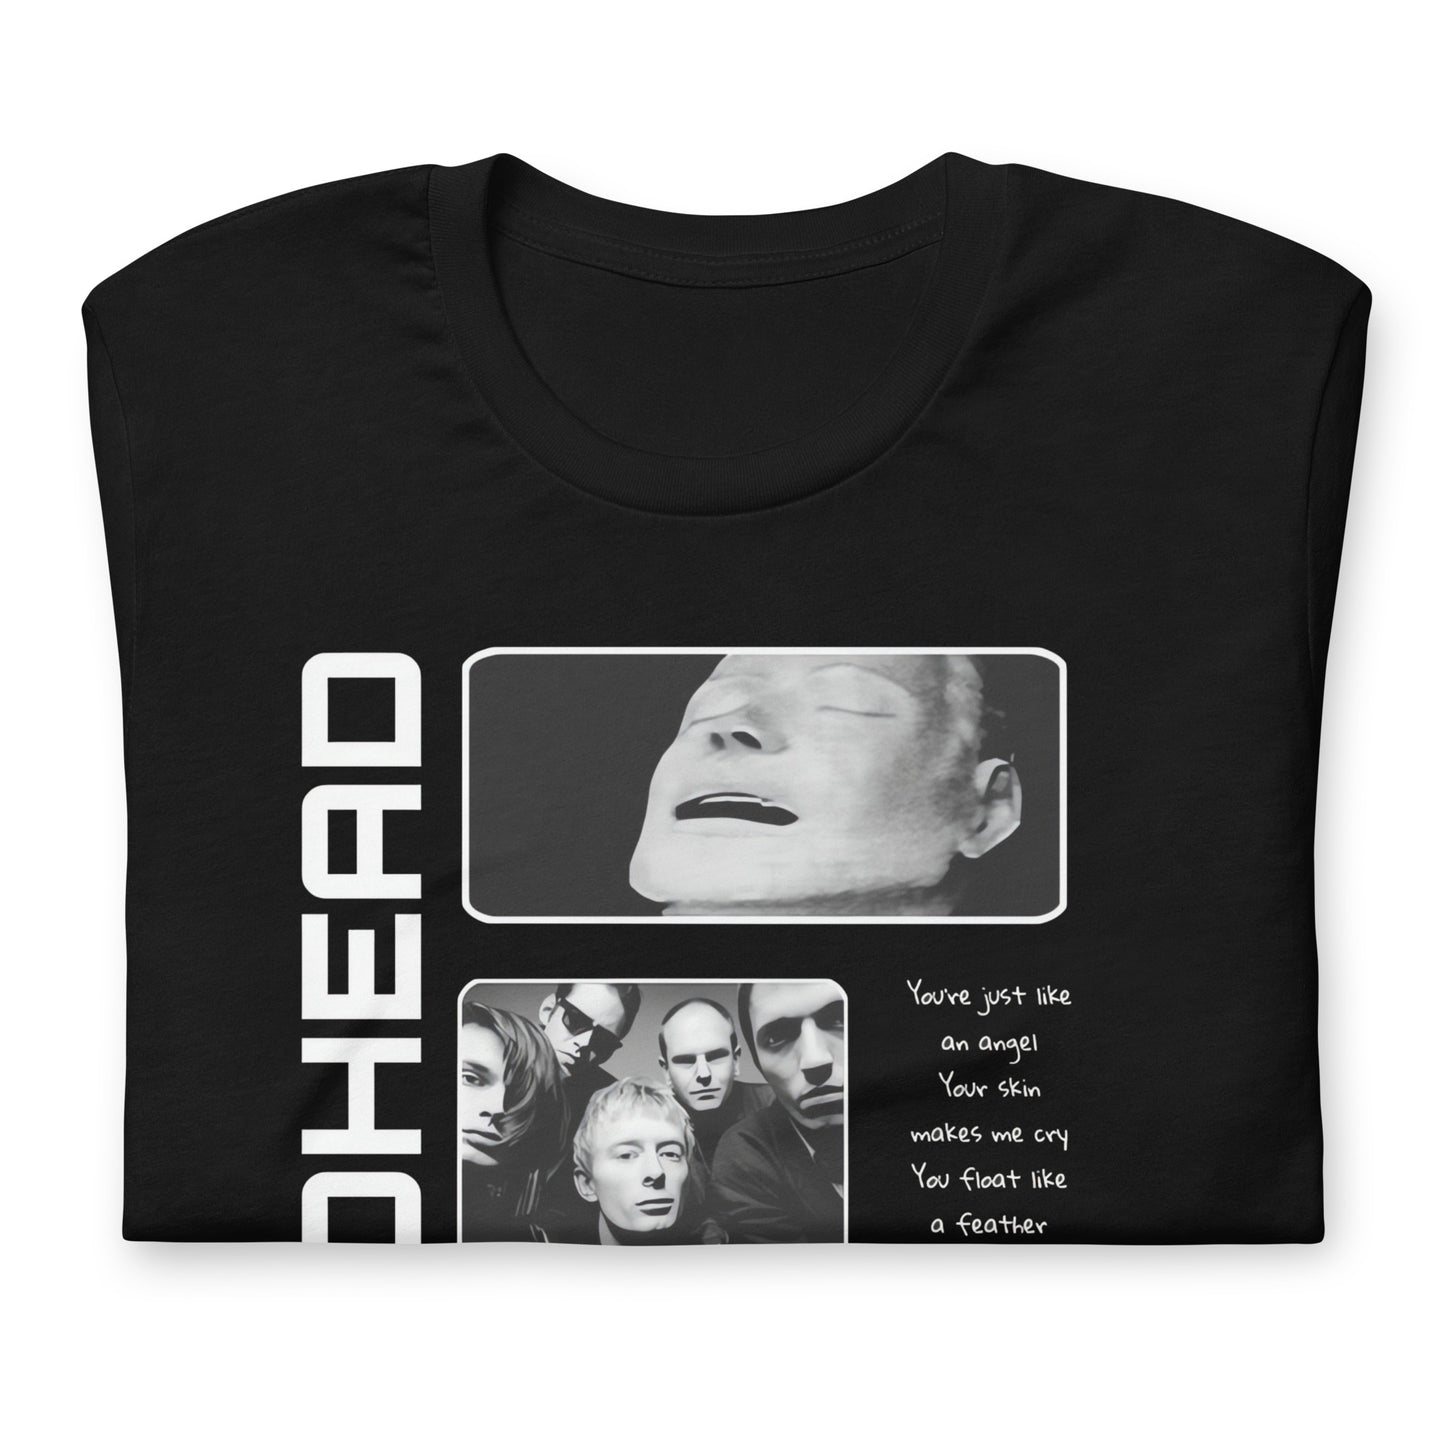 ¡Compra el mejor merchandising en Superstar! Encuentra diseños únicos y de alta calidad en camisetas únicas, Camiseta RadioHead History